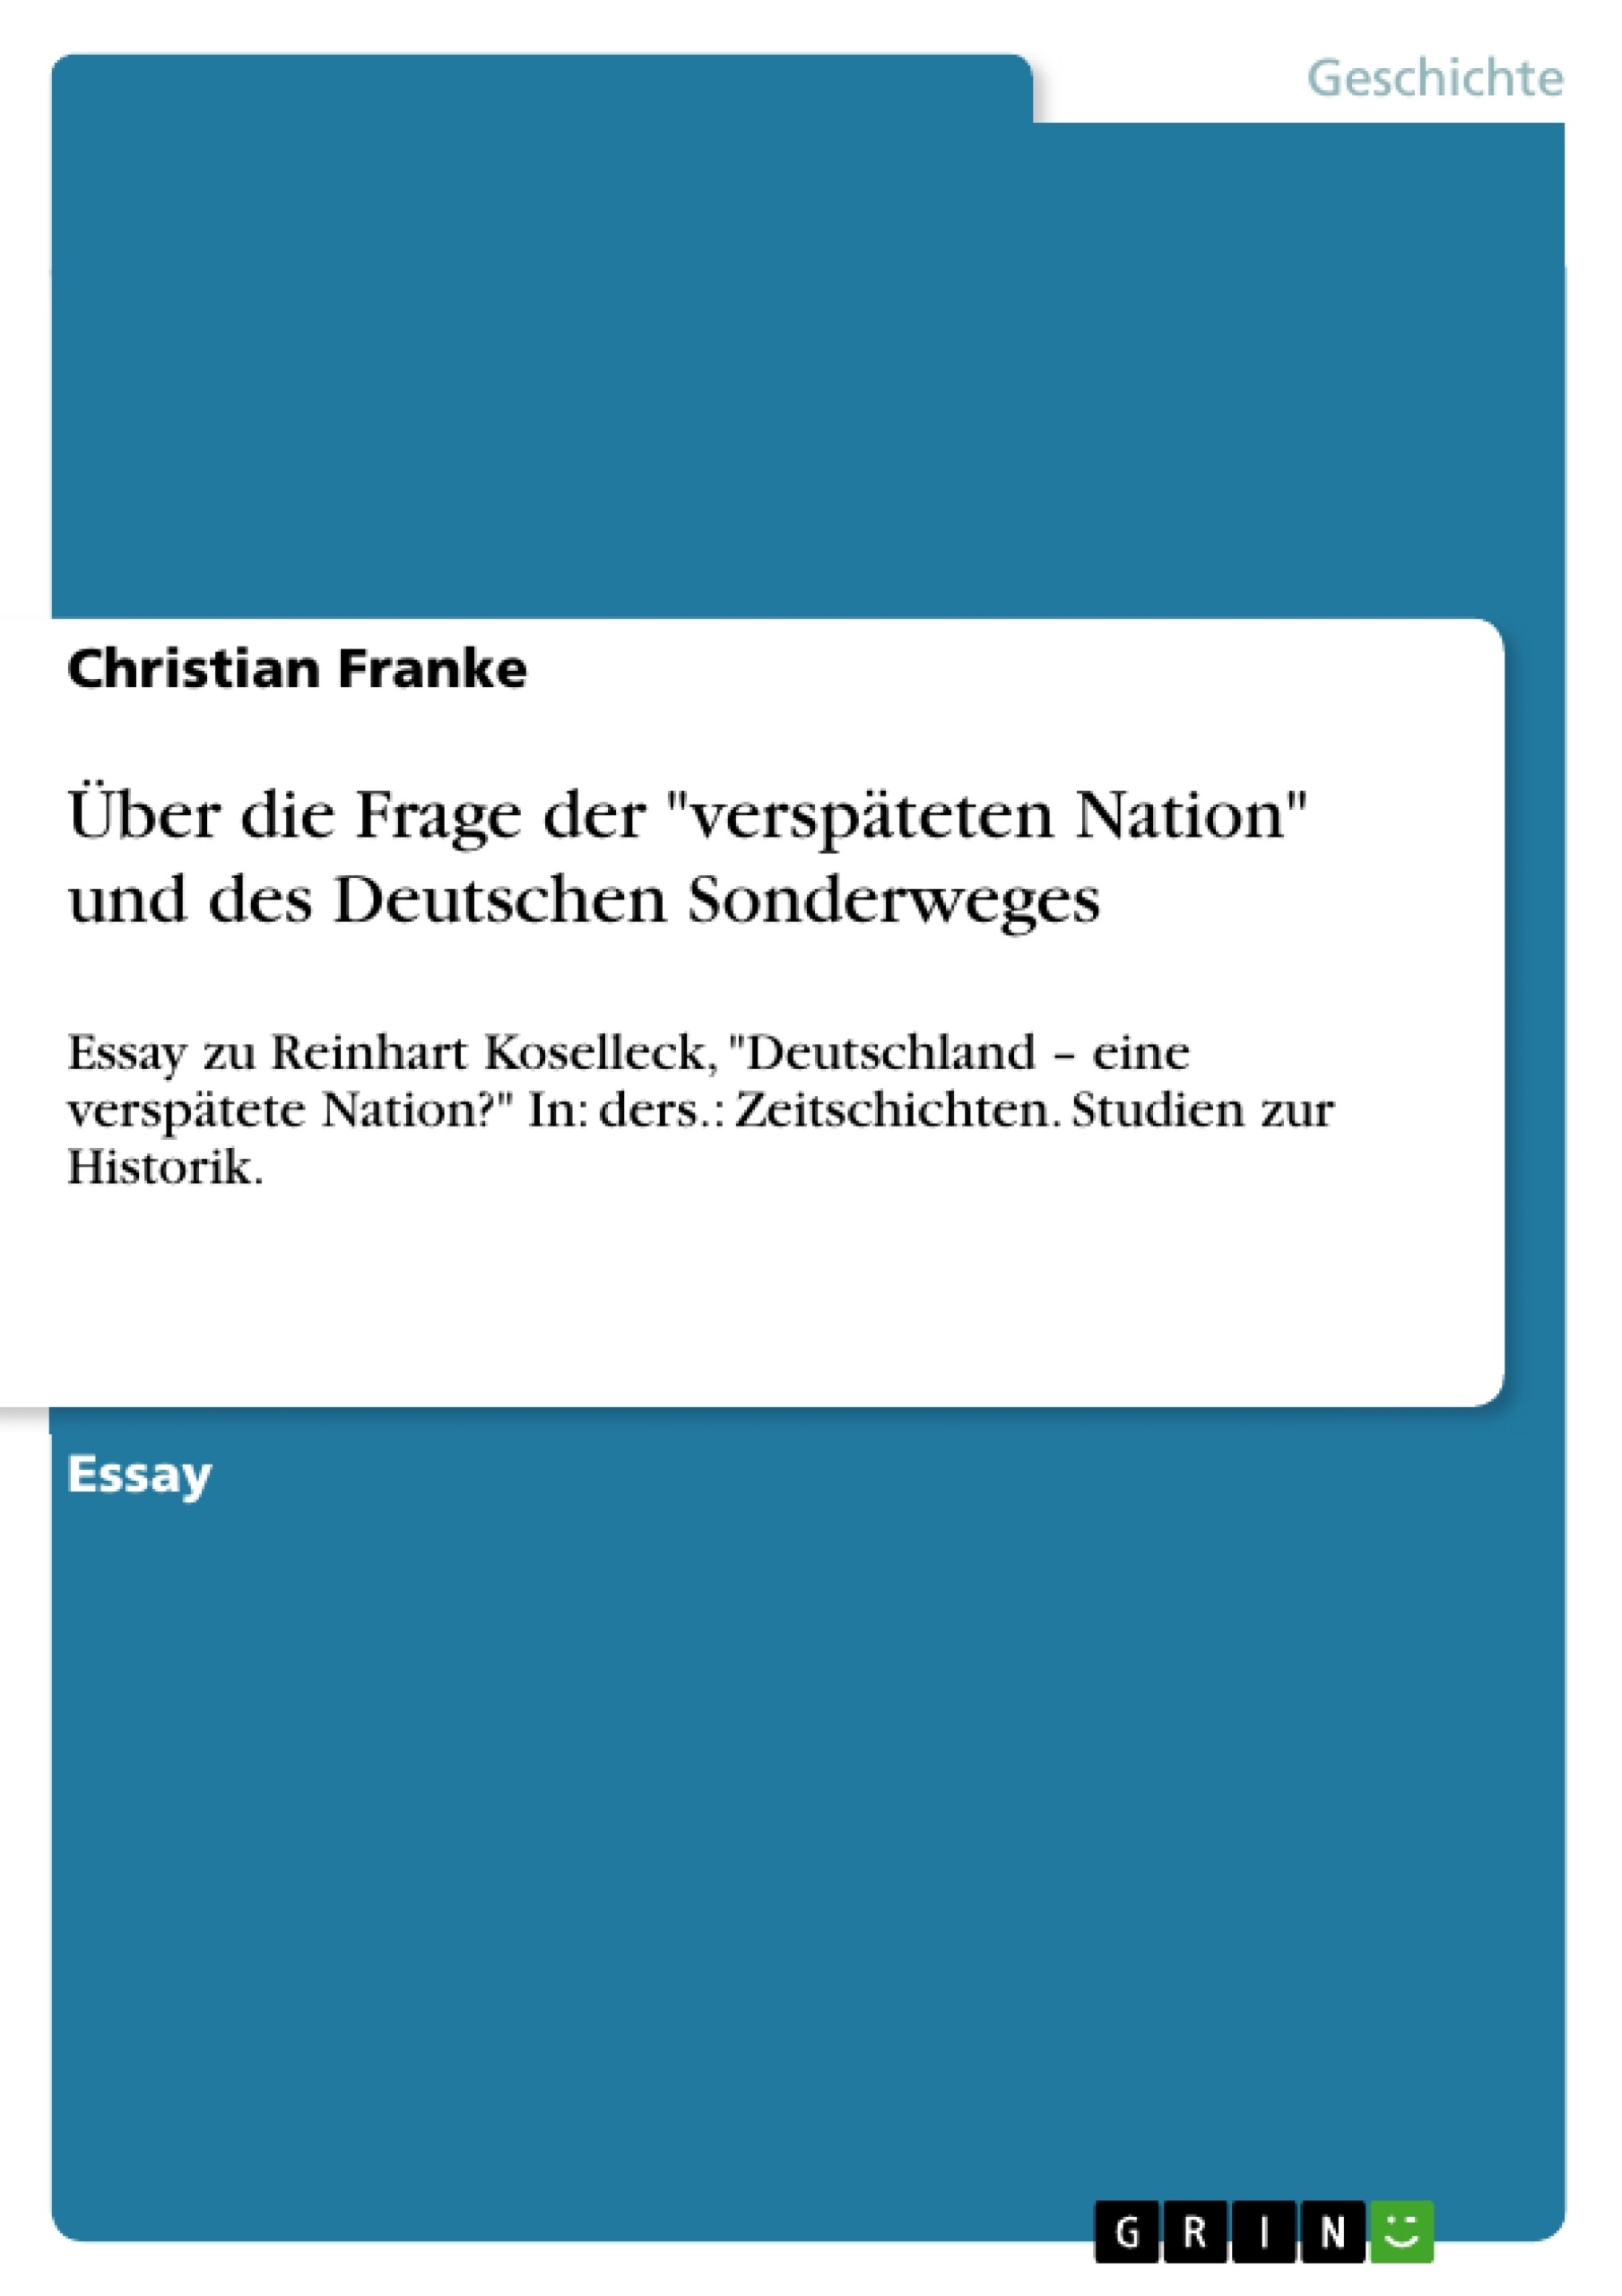 Titre: Über die Frage der "verspäteten Nation" und des Deutschen Sonderweges